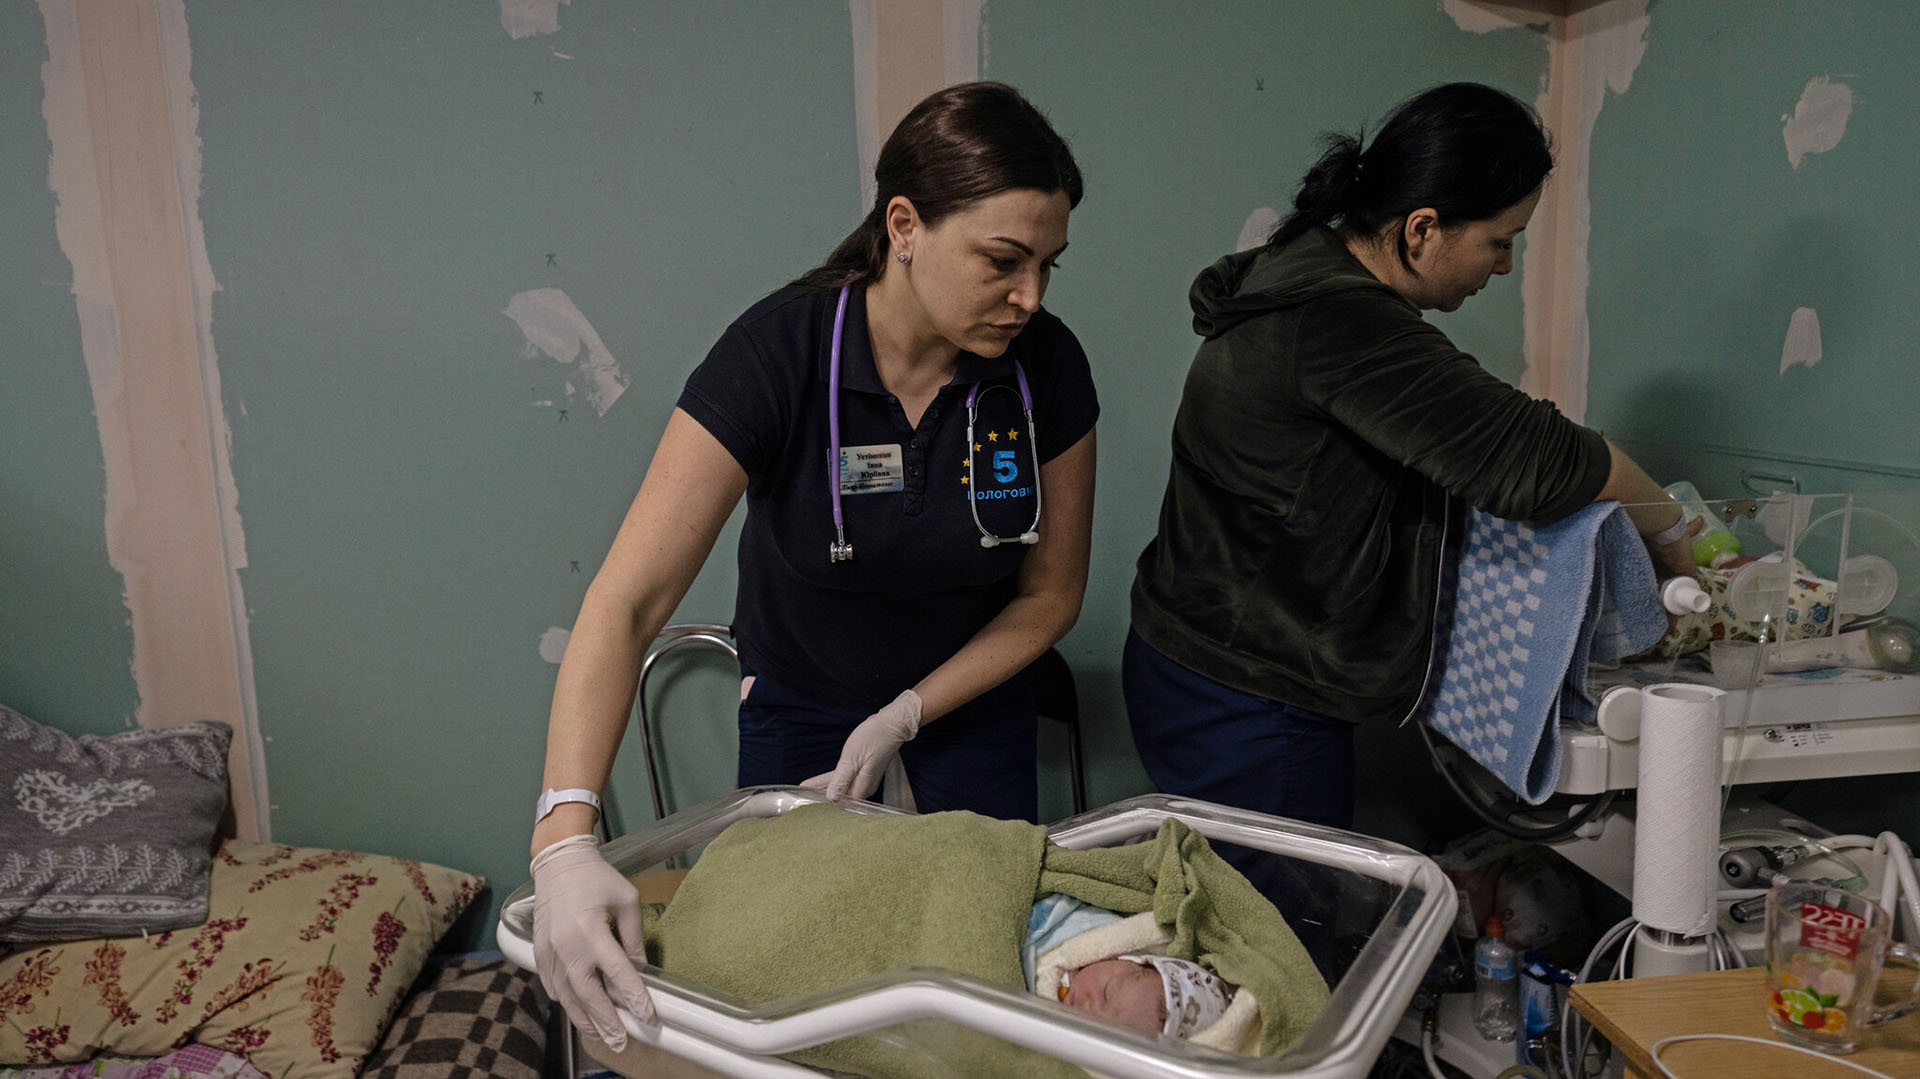 
Enfermeras ucranianas atendiendo a recién nacidos en una sala de maternidad en un sótano improvisado en Kiev el mes pasado.
(Lynsey Addario/The New York Times)